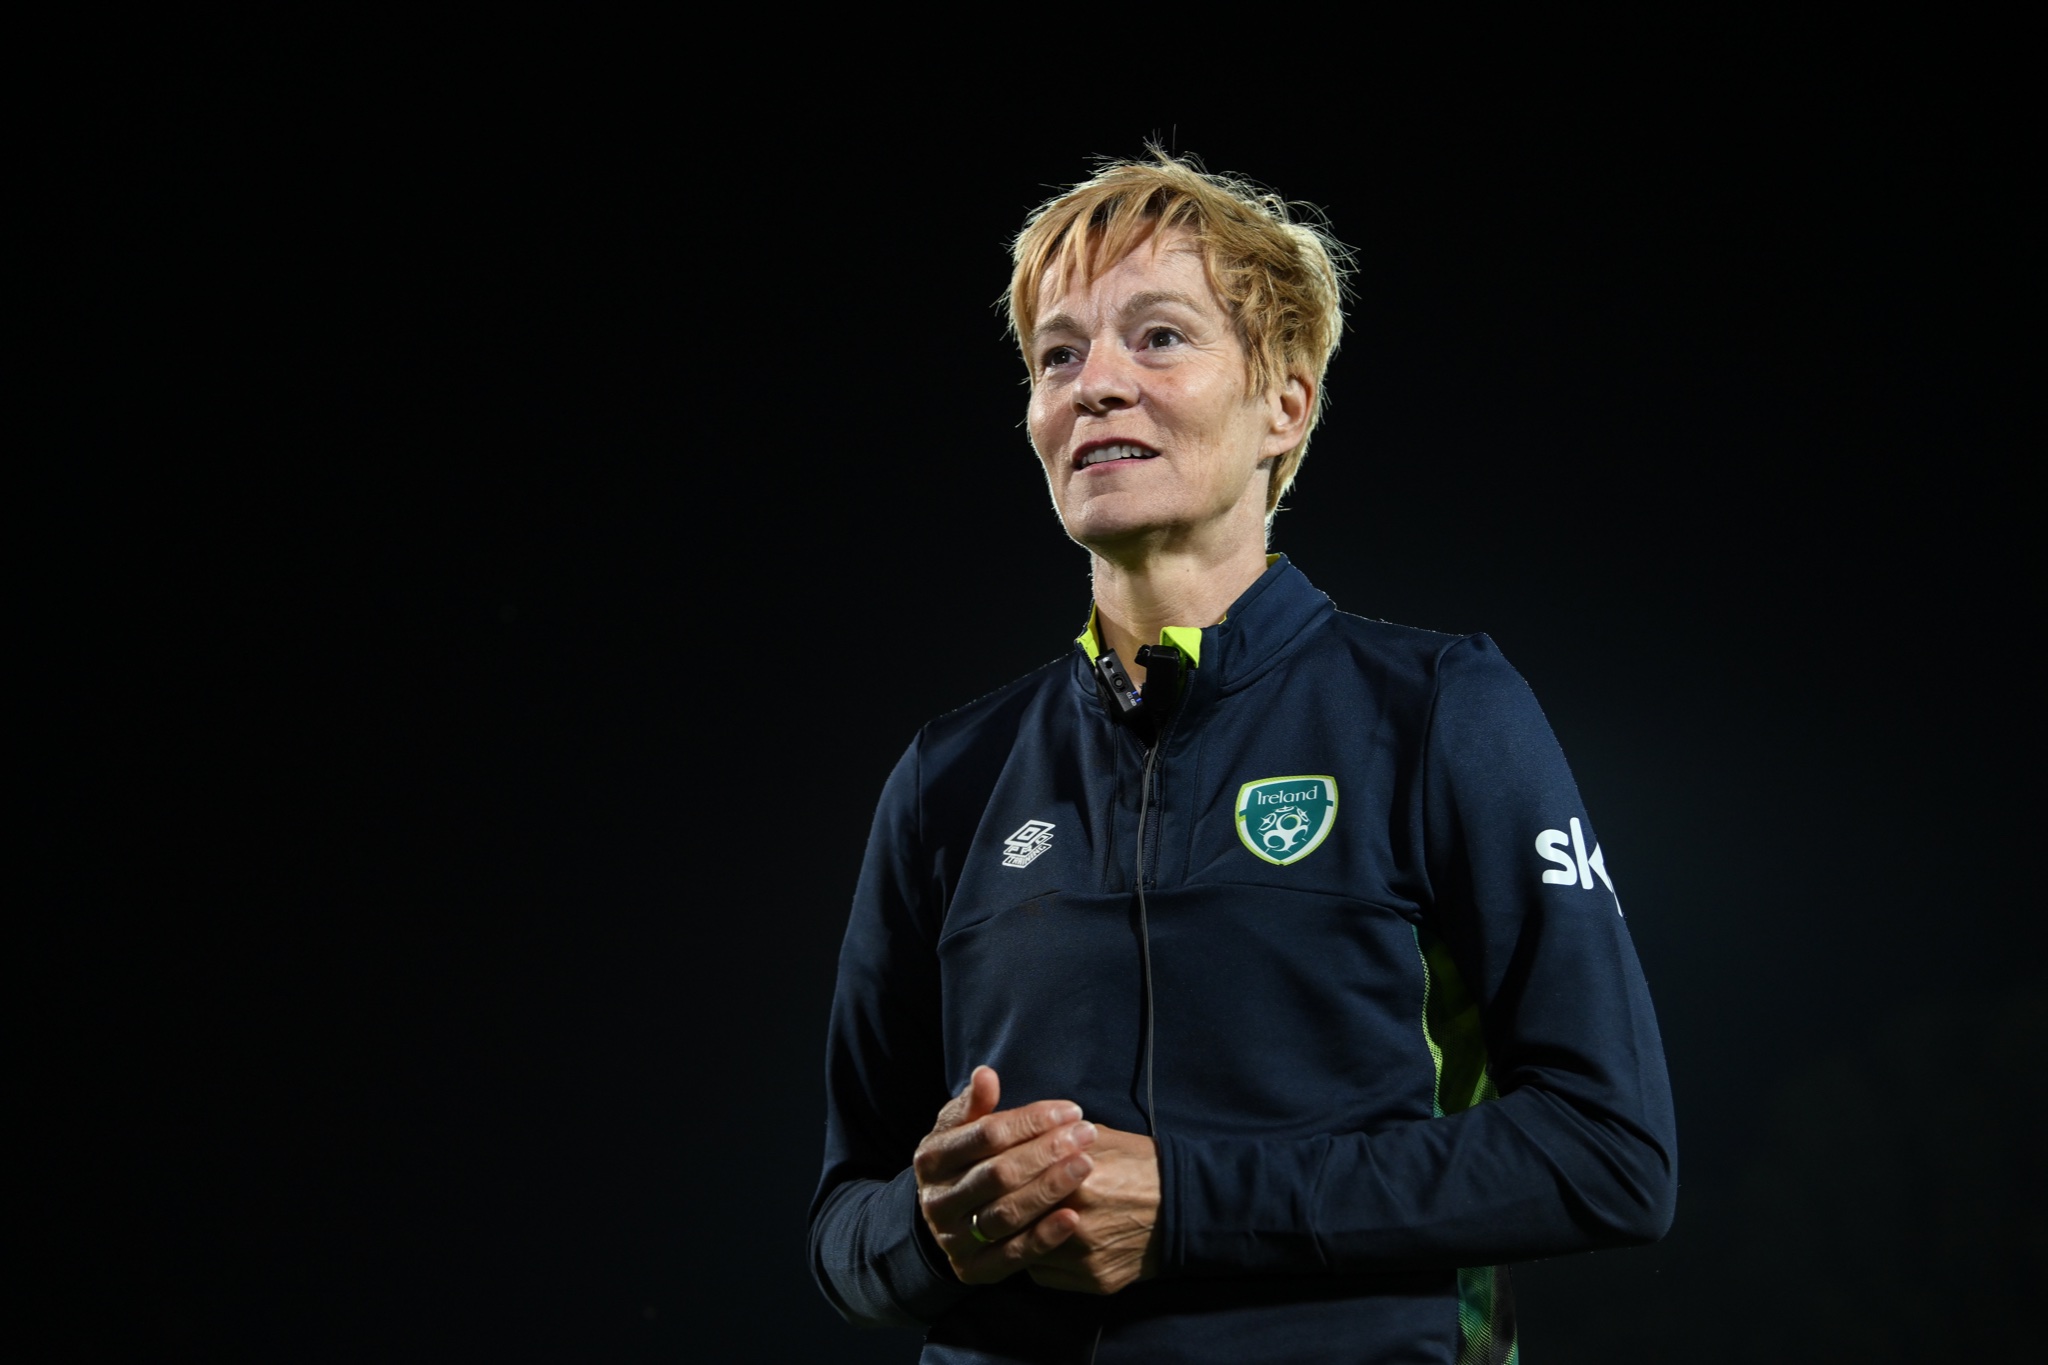 Súčasnú trénerku ženskej futbalovej reprezentácie Írska mal v minulosti znásilniť holandský funkcionár